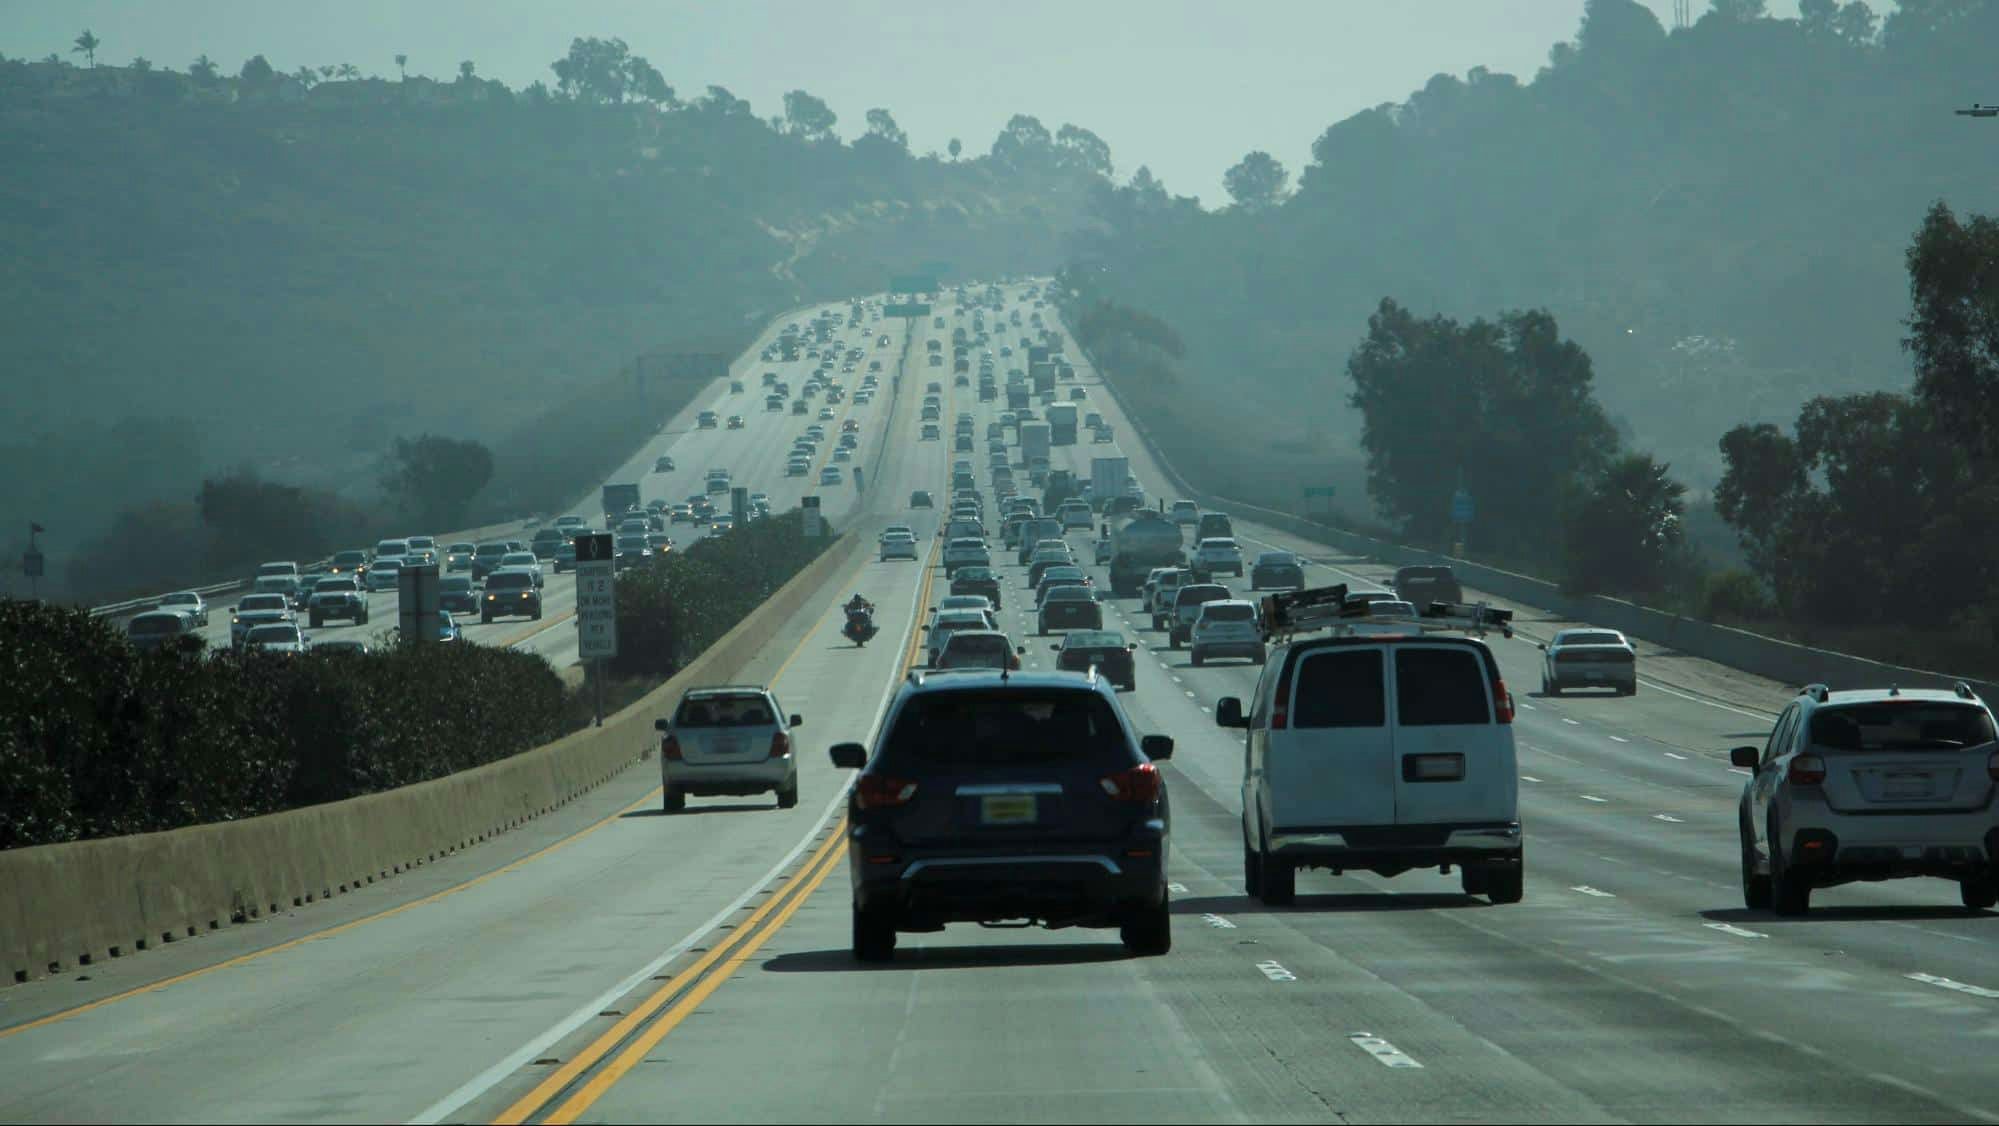 A freeway with heavy traffic 